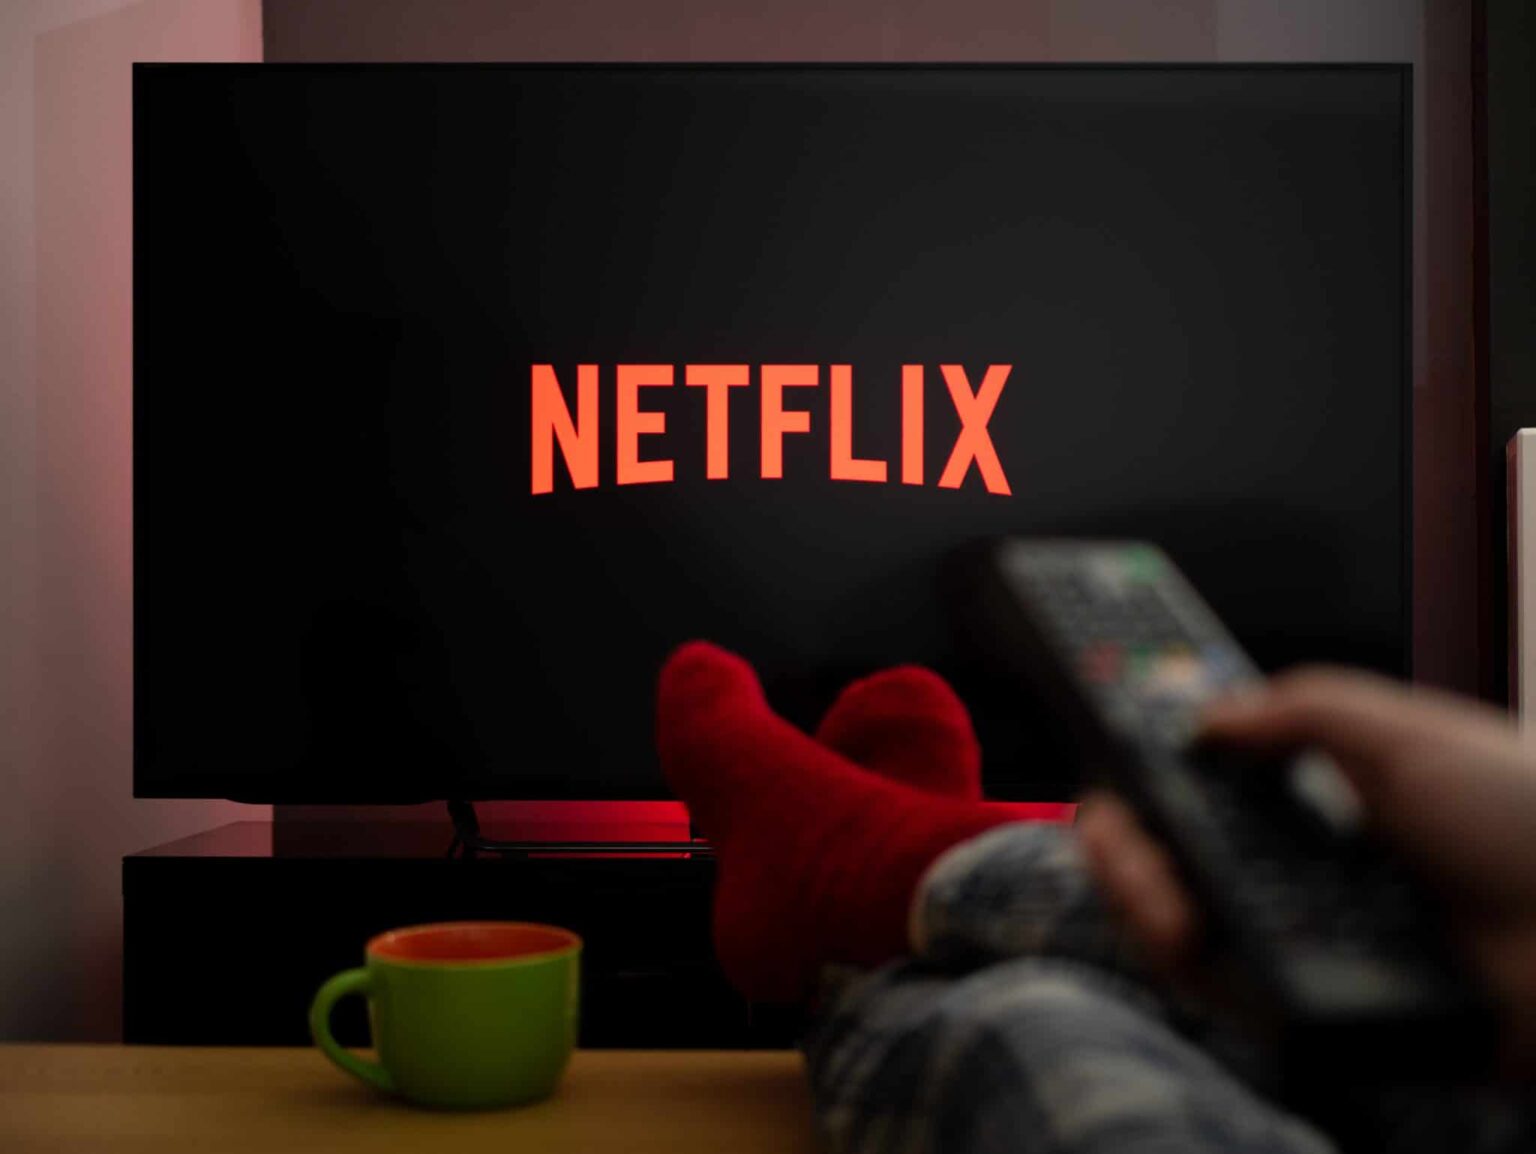 ¿Ya viste todo el catálogo de Netflix? Checa los estrenos que llegarán en febrero a la plataforma.